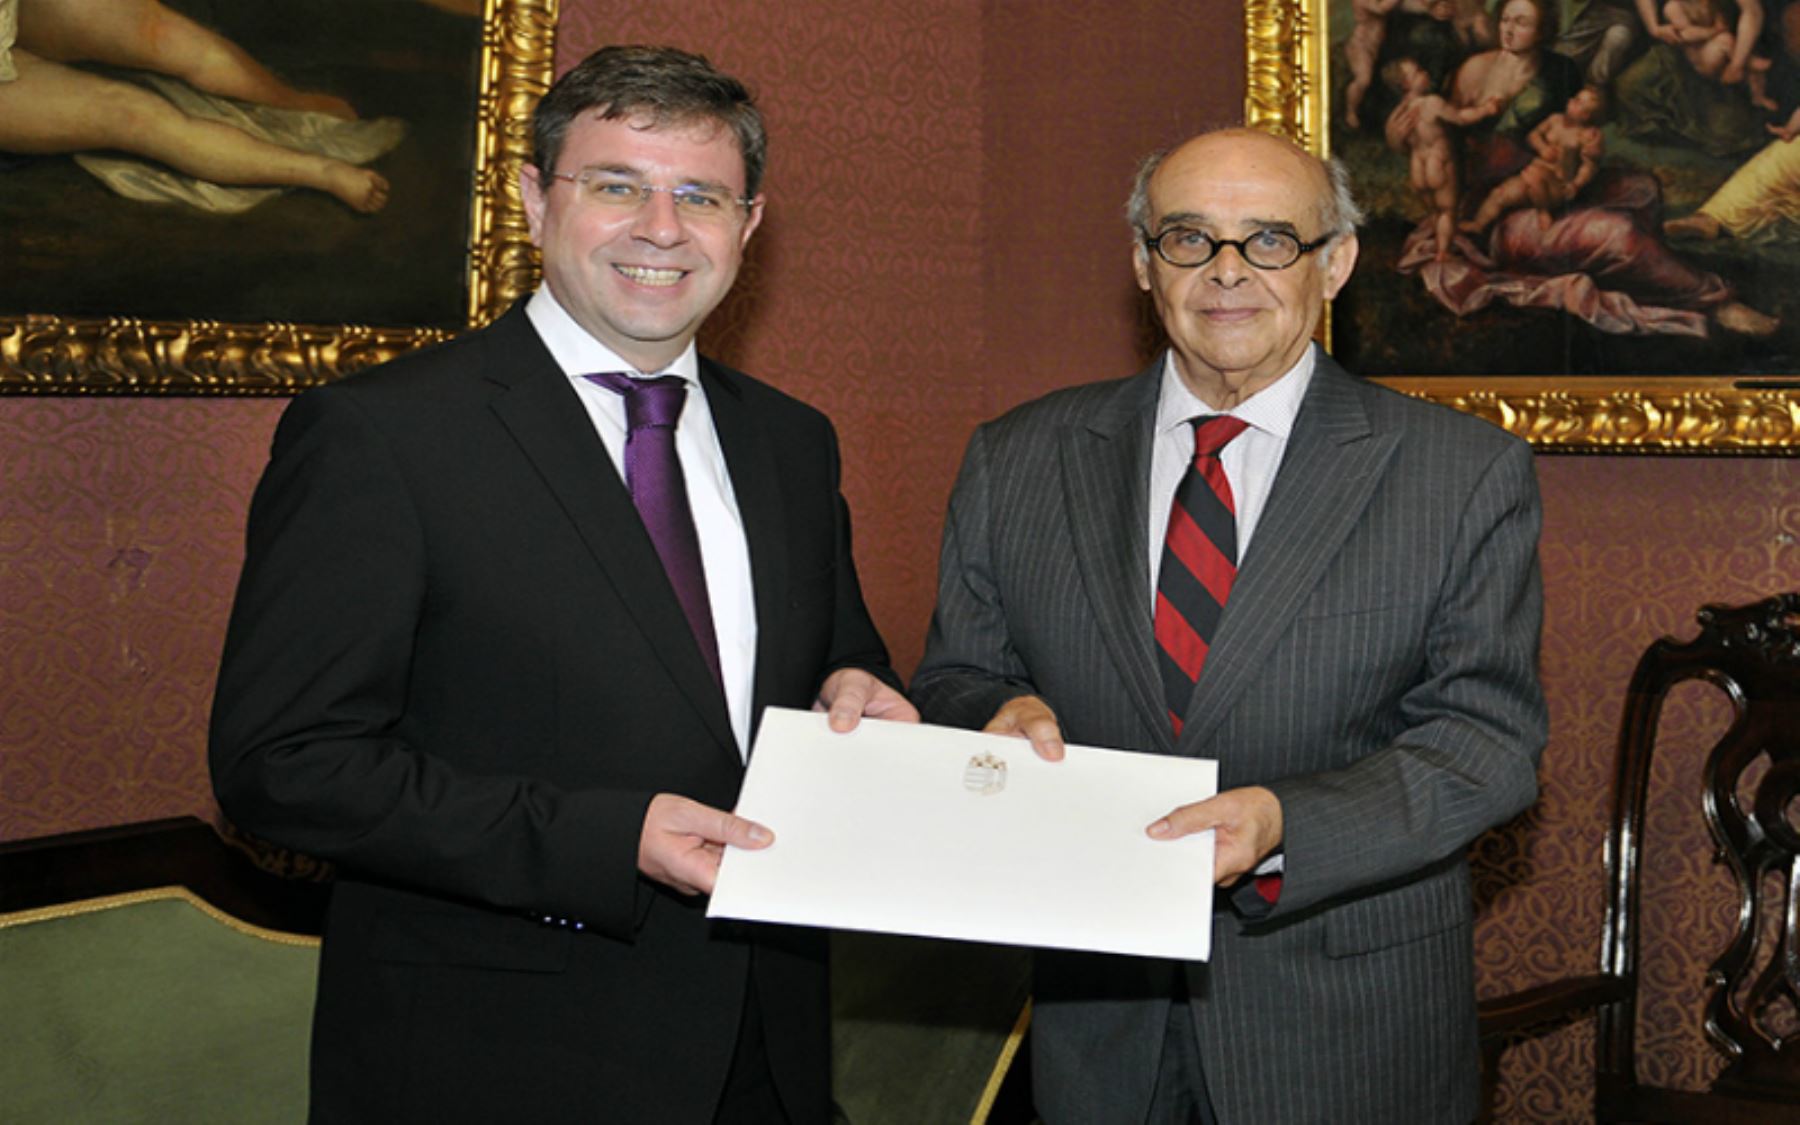 El embajador de Hungría, Gabór Kaleta, presentó hoy al ministro de Relaciones Exteriores, Ricardo Luna, las copias de sus cartas credenciales que lo acreditan como embajador extraordinario y plenipotenciario de Hungría en el Perú.